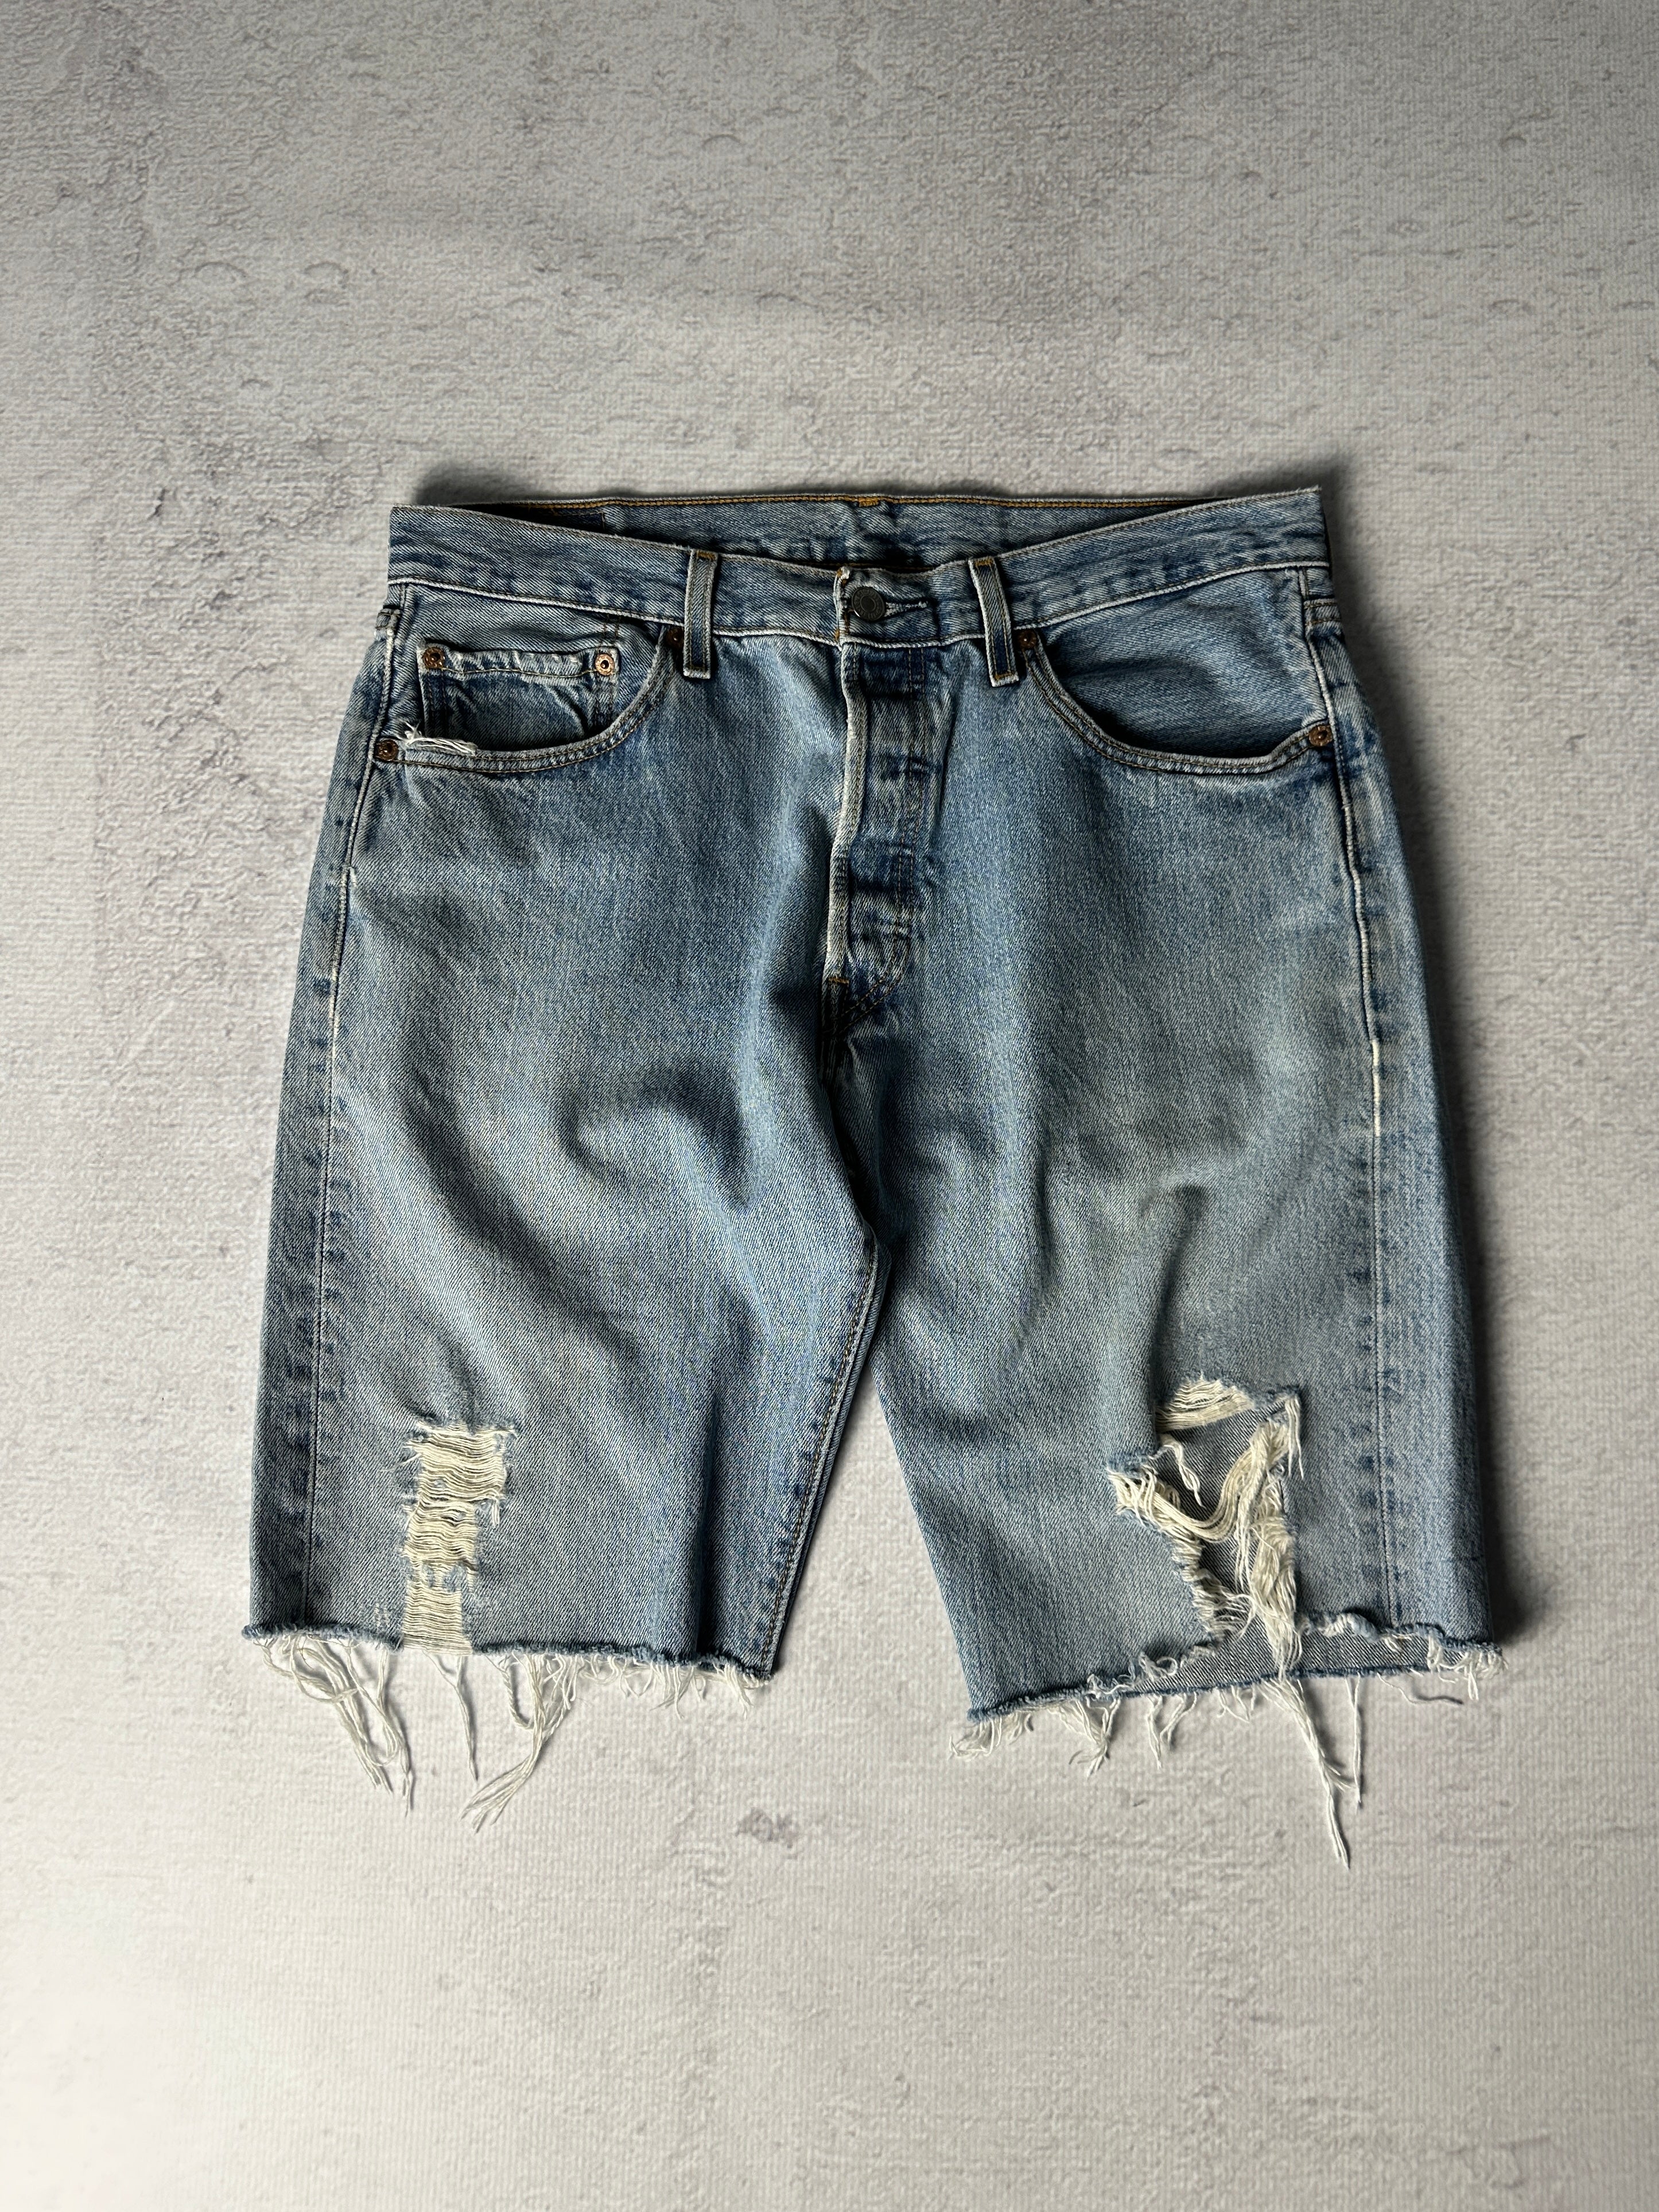 Vintage Levis 501 Distressed Jean Shorts - Men's 32W11L